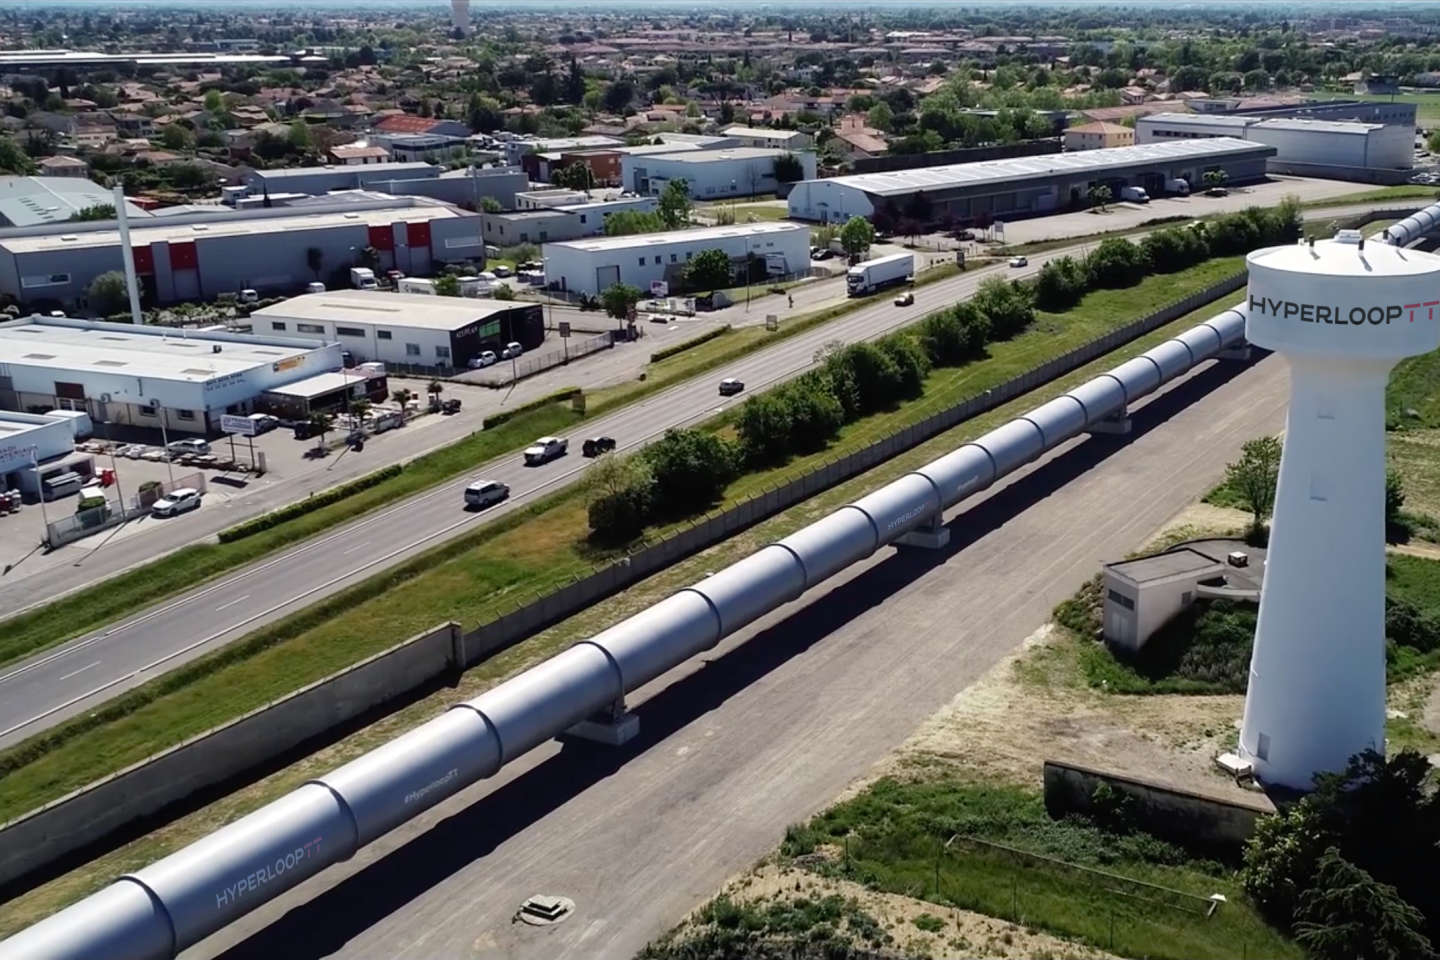 Hyperloop de Toulouse : de la Silicon Valley à l’Occitanie, comment le projet a déraillé